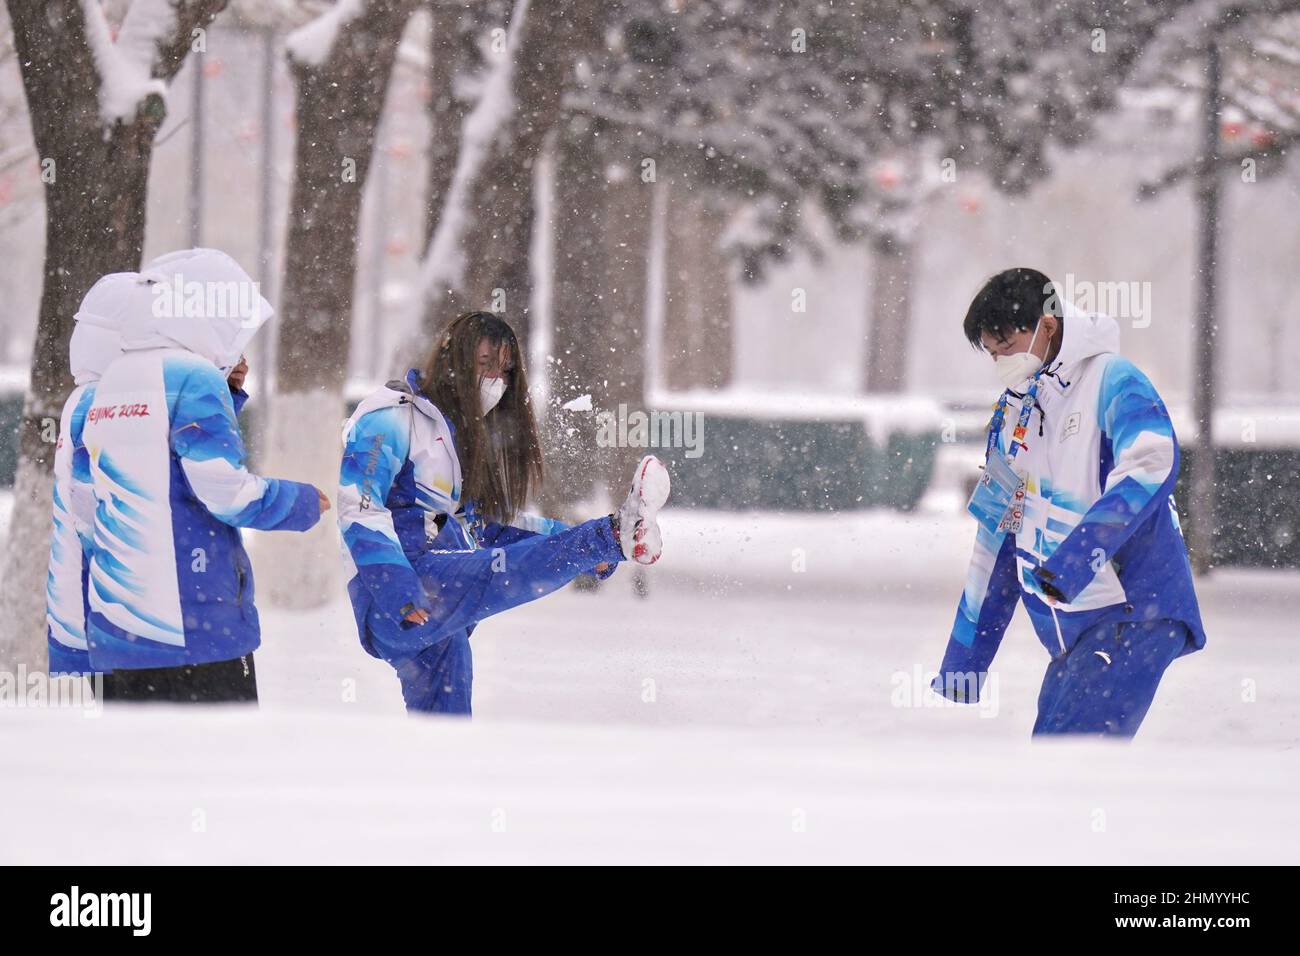 Olympische Freiwillige spielen bei den Olympischen Winterspielen 2022 in Peking am Sonntag, den 13. Februar 2022, im Schnee während eines starken Schneefalls. Foto von Richard Ellis/UPI Stockfoto